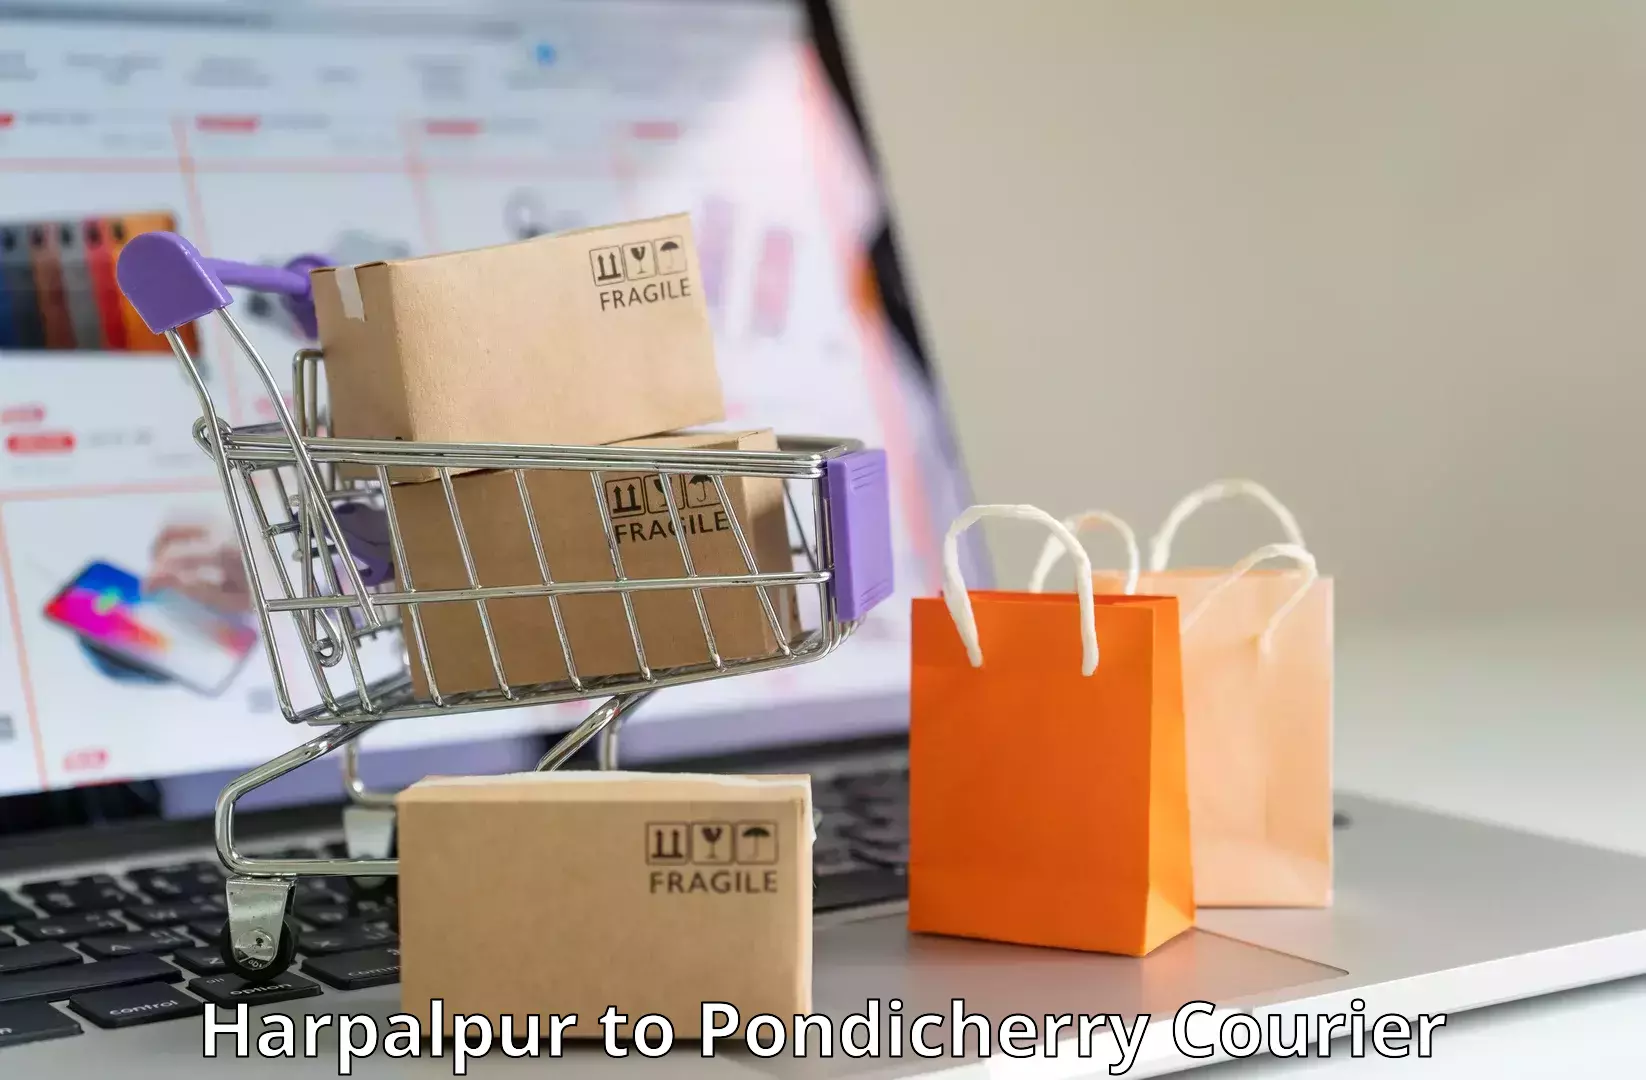 Weekend courier service Harpalpur to NIT Puducherry